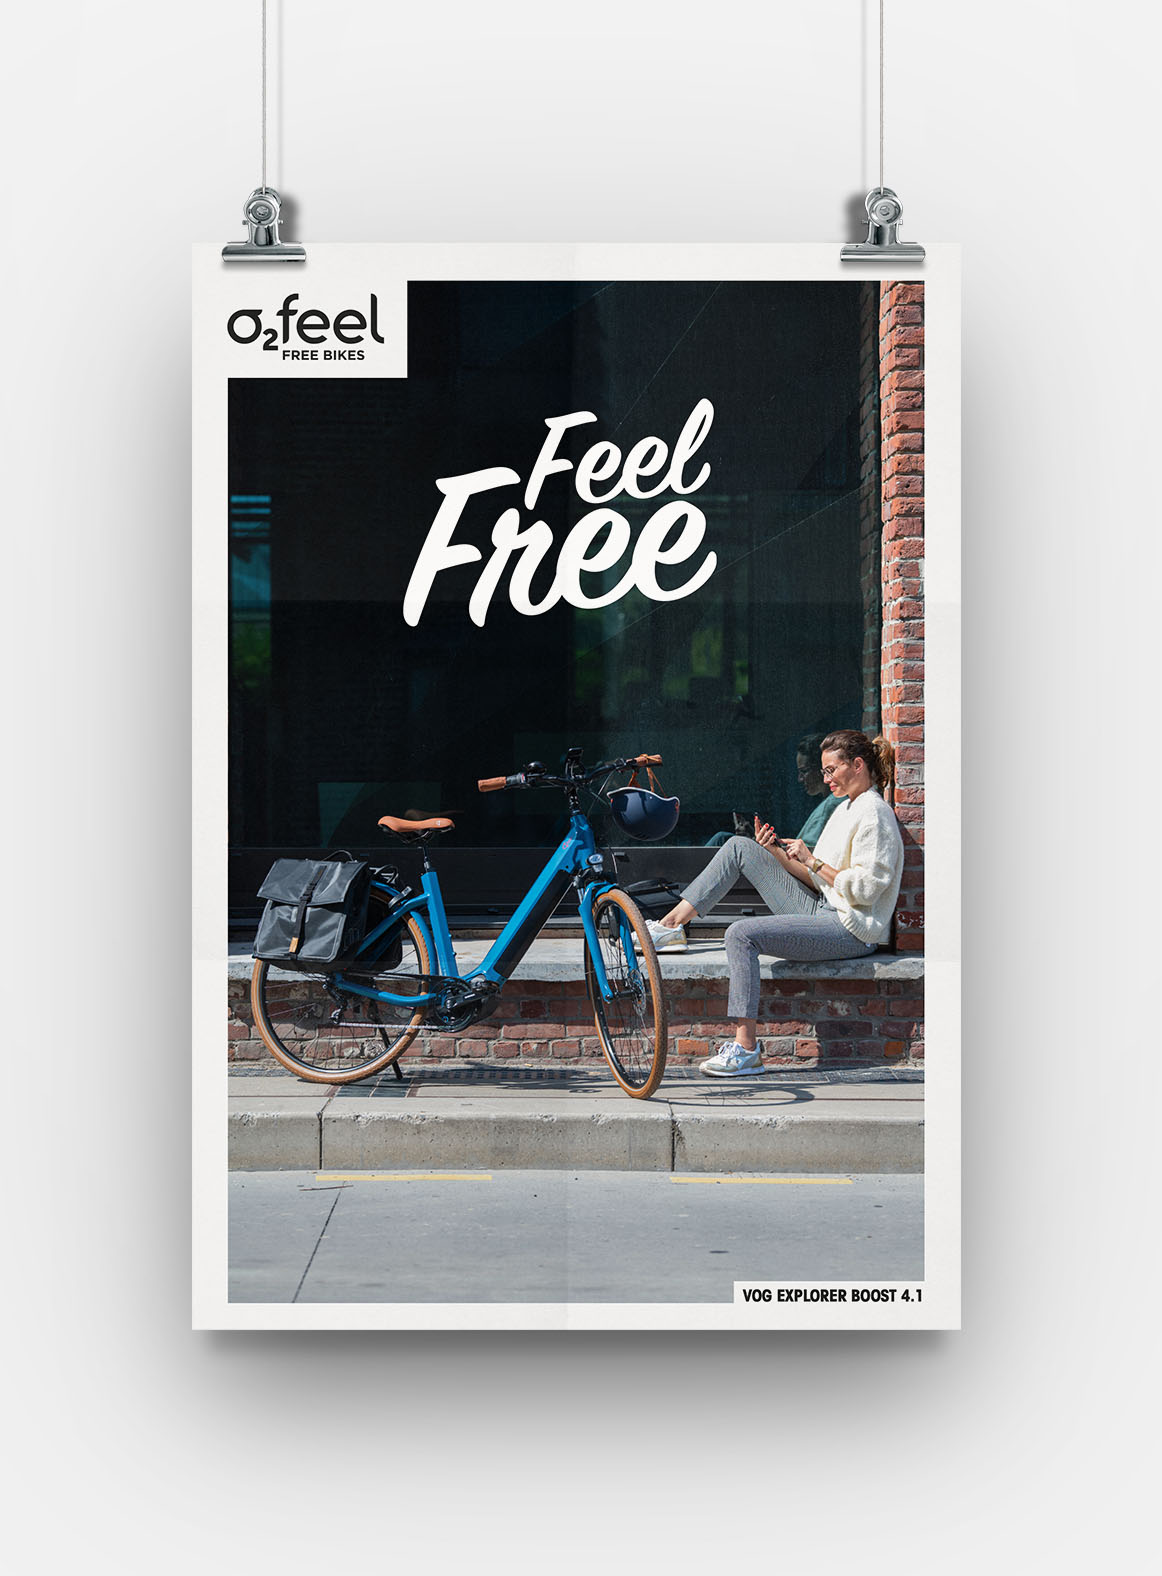 Création de contenu et communication pour 02feel une marque française de vélos électriques. Campagne de communication par Sakkamoto agence de communication et de brand content Lilloise.